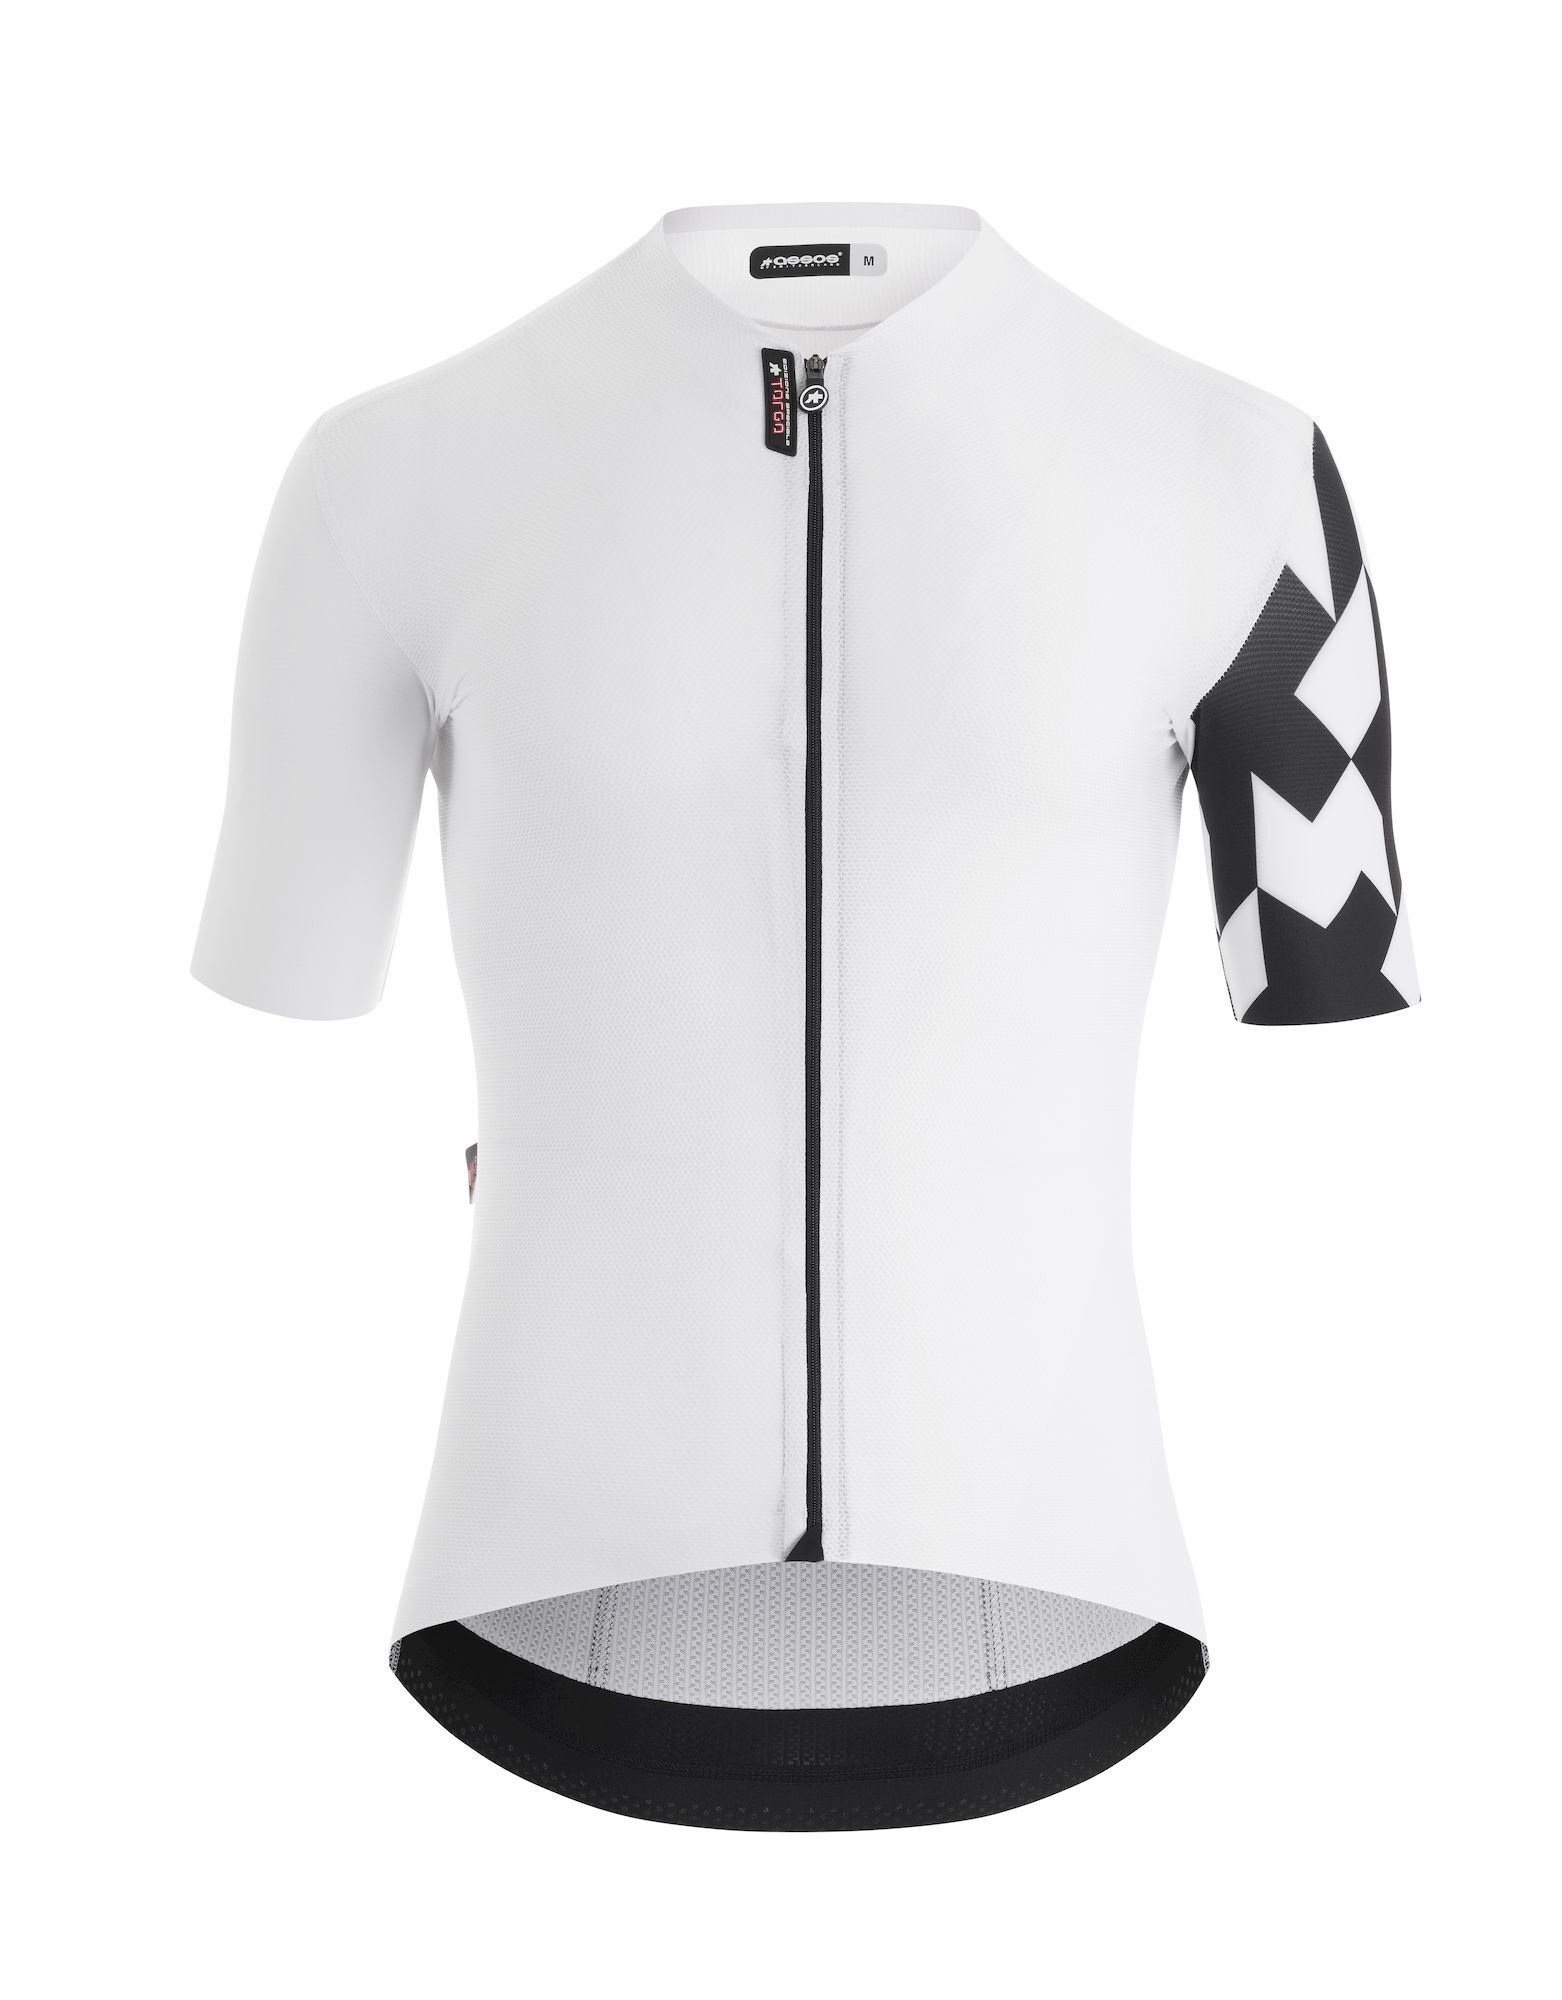 Assos Equipe RS S9 TARGA - Cycling jersey - Men's